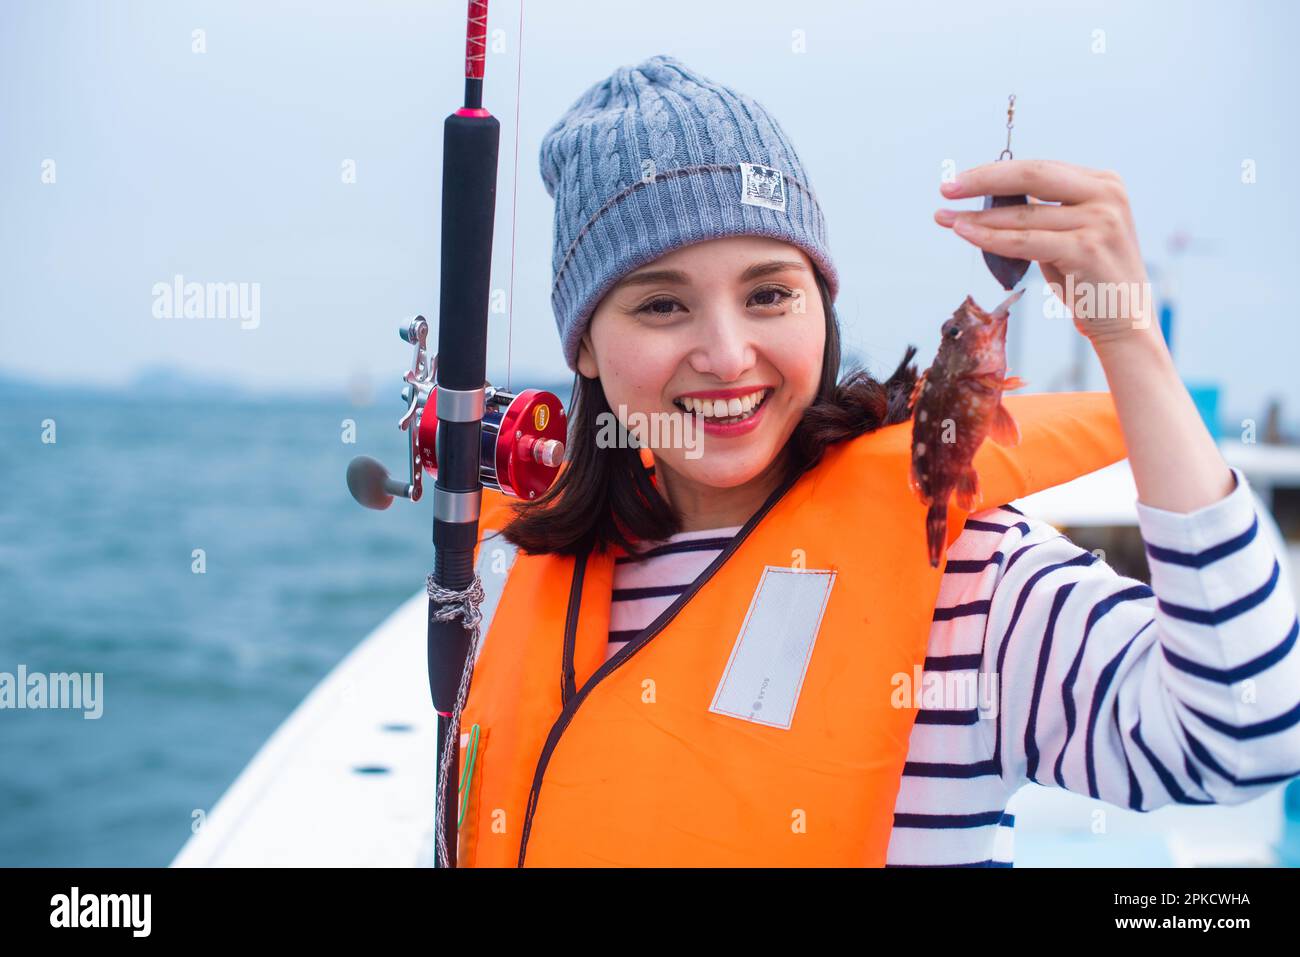 Une femme dans son 20s tenant un poisson de scorpion qu'elle a attrapé Banque D'Images